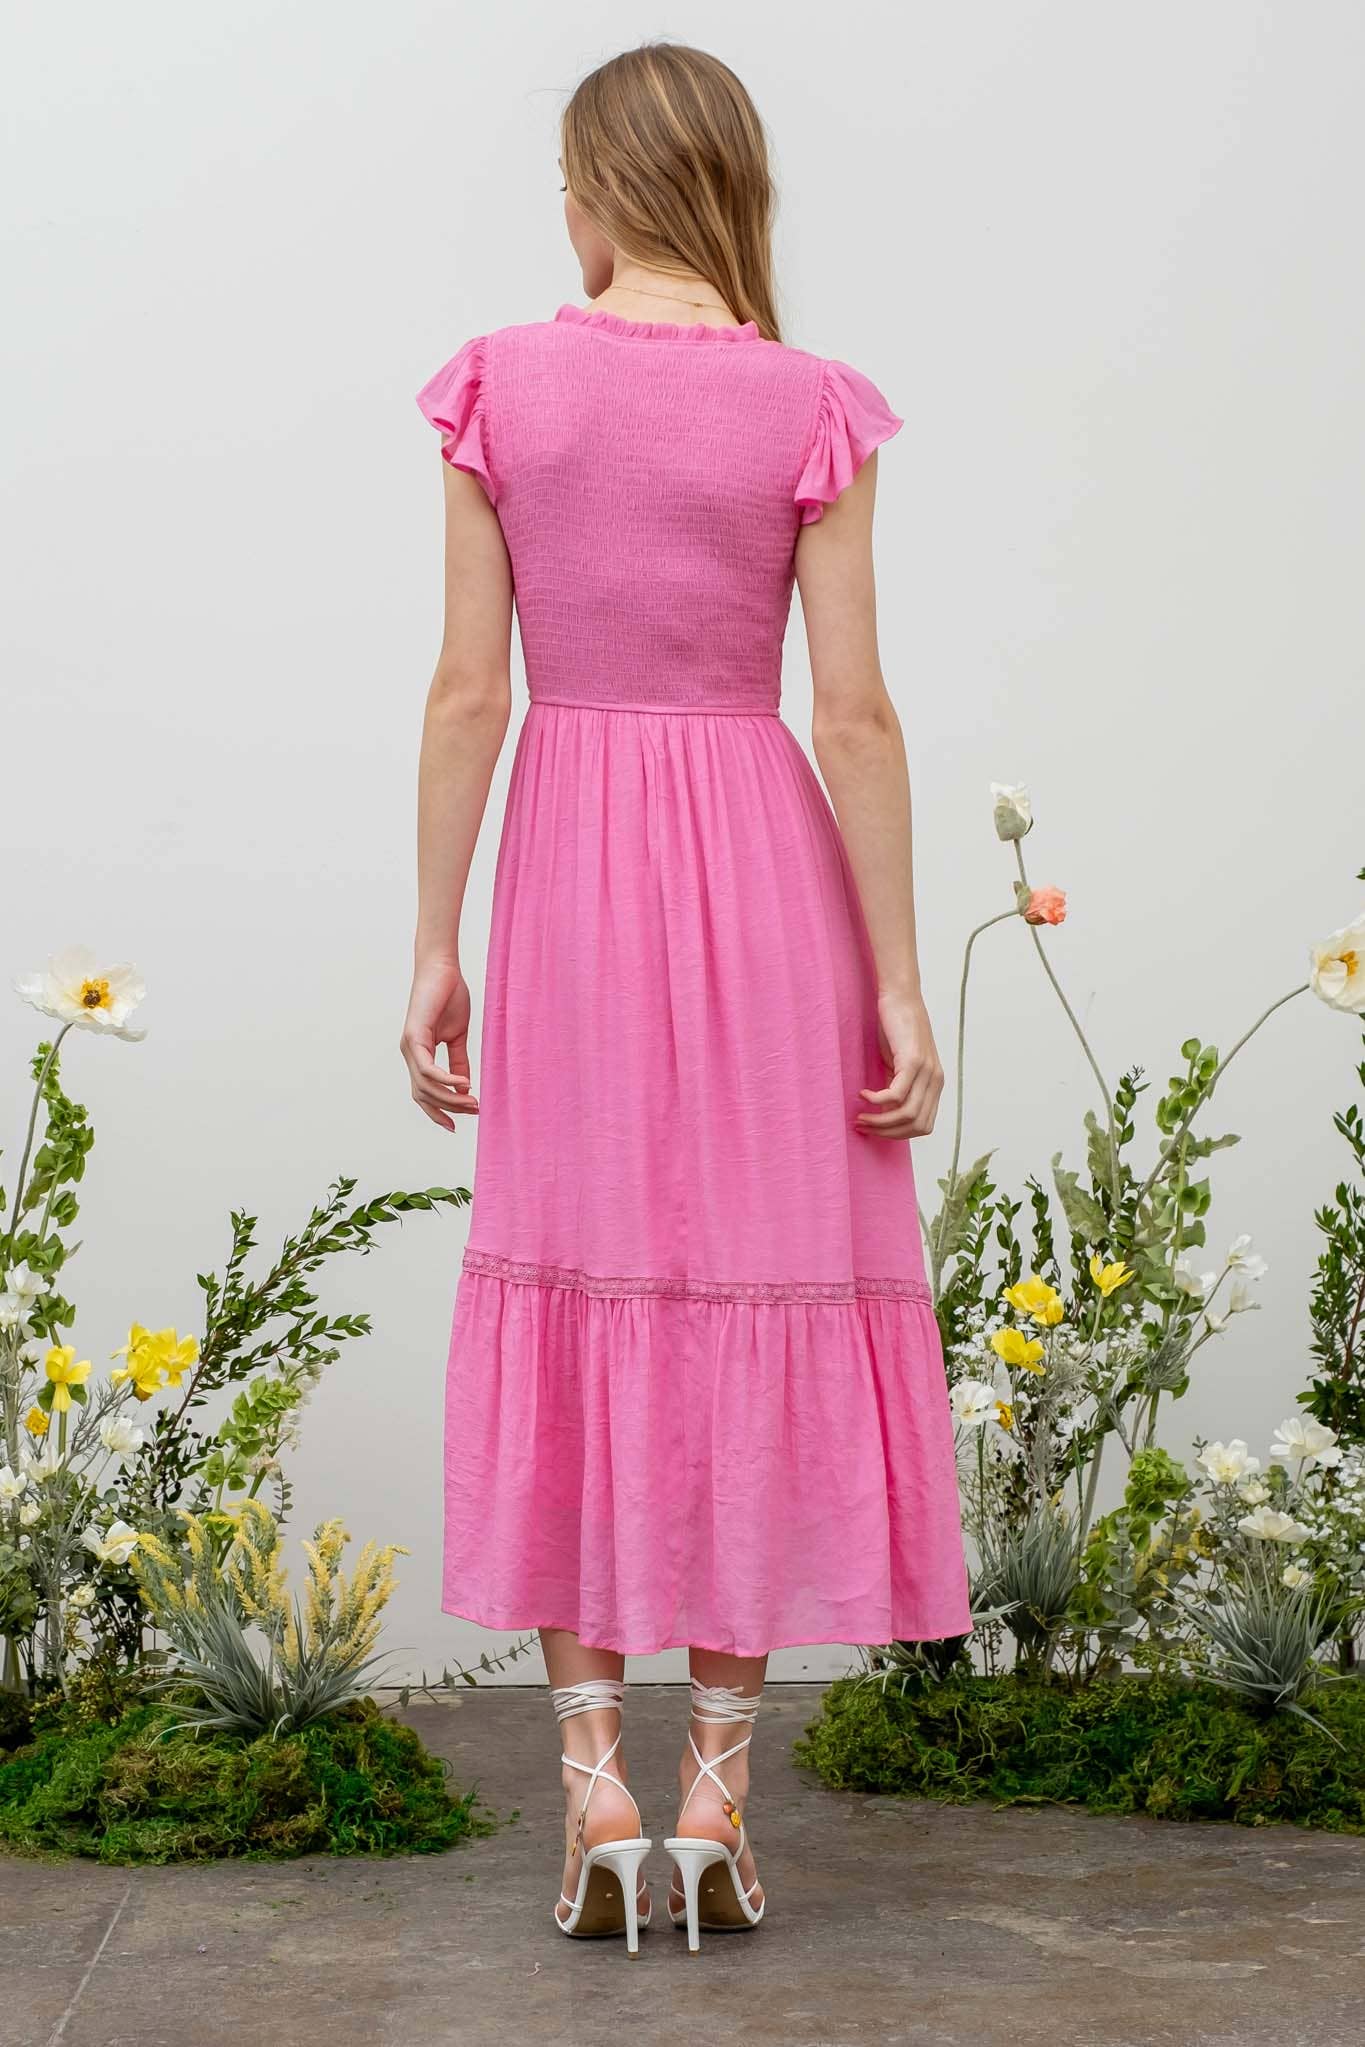 Taking Chances (Pink) Smocked Dress